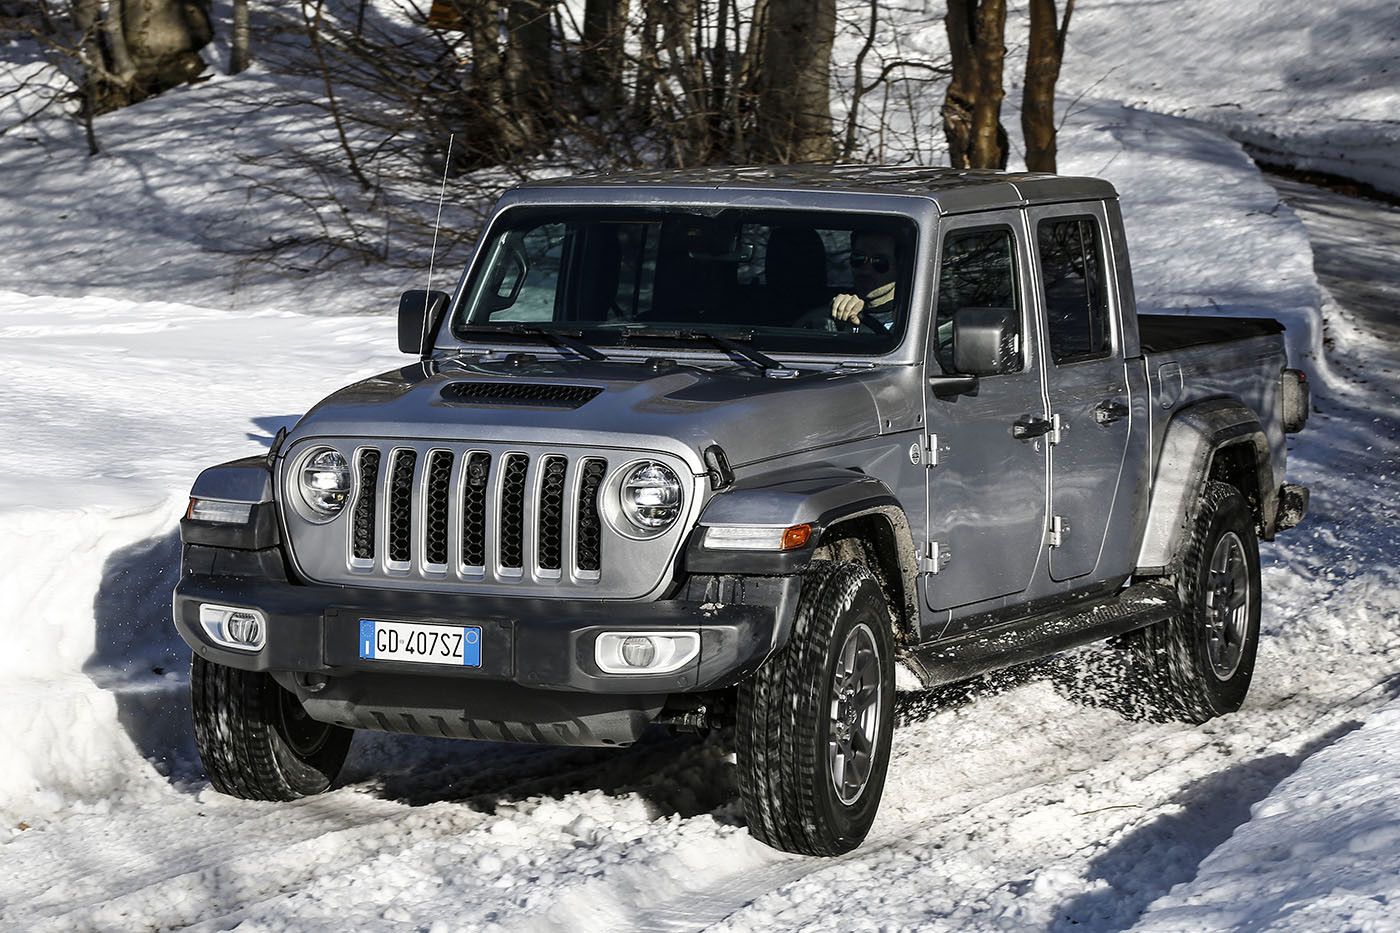 Ετοιμοπαράδοτο το Jeep Gladiator – και έτοιμο για τις χιονισμένες πλαγιές